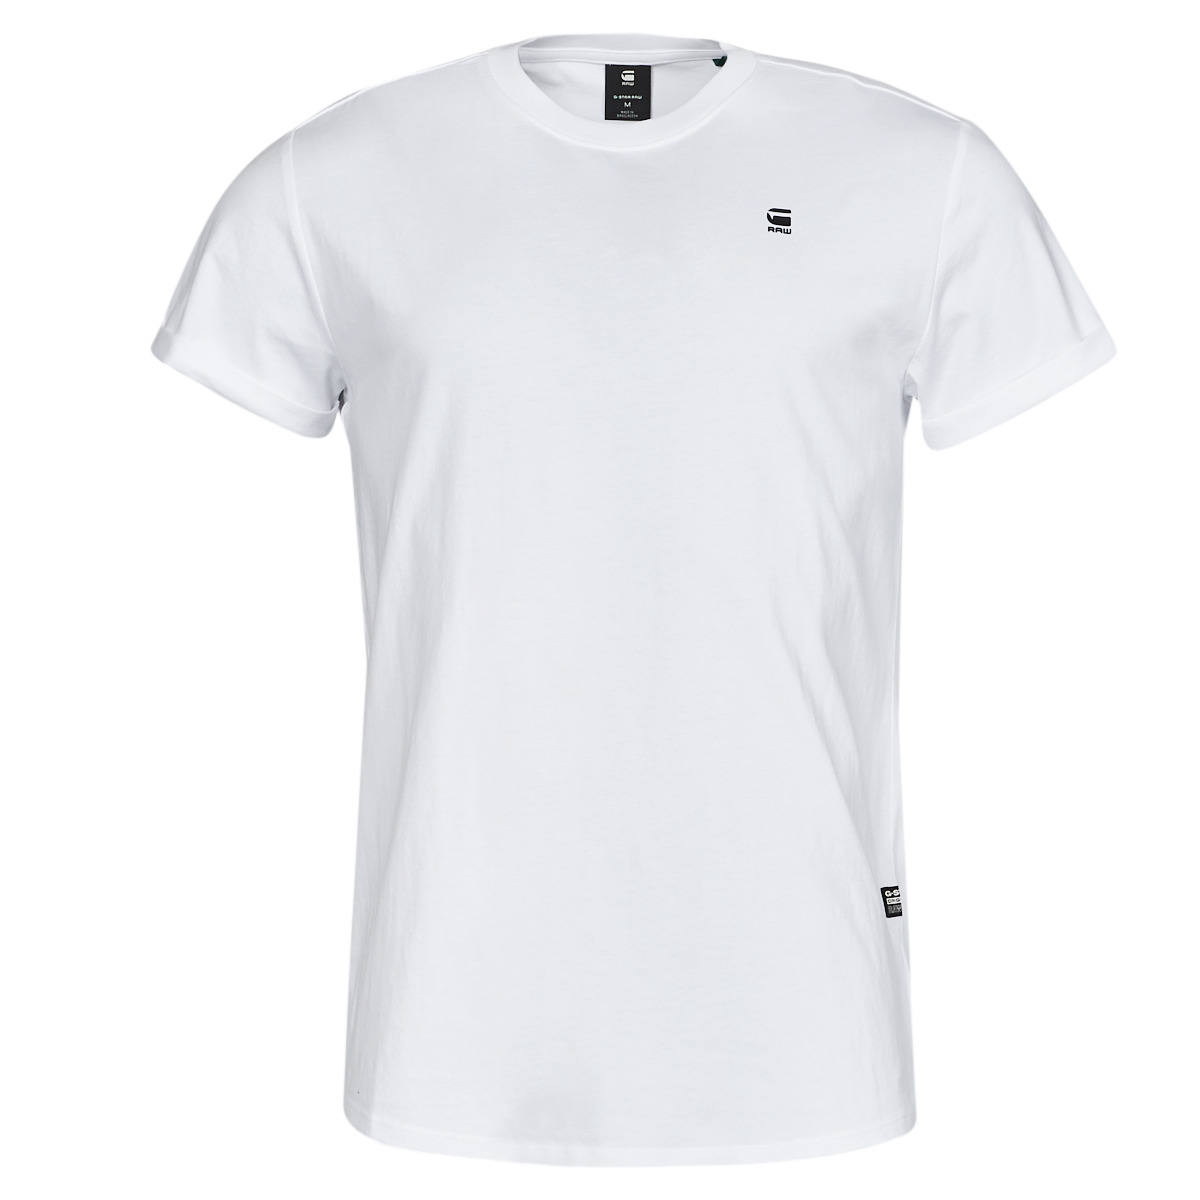 G-Star RAW T-shirt Lash T Shirt D16396 B353 110 White Mannen Maat - XL